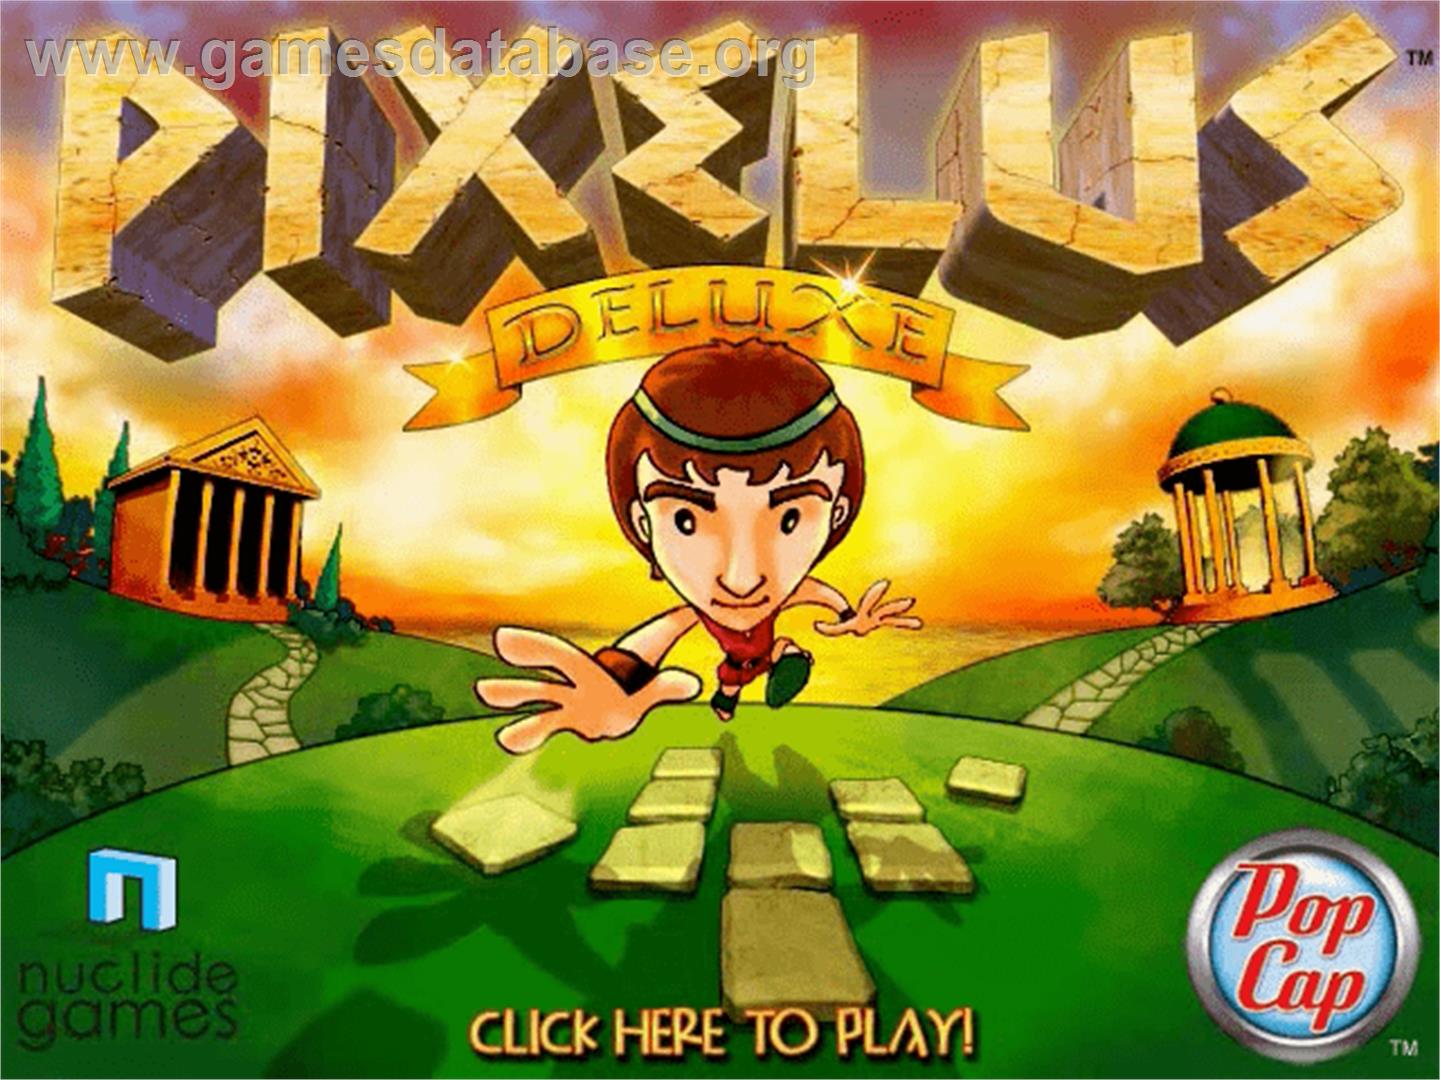 Pixelus Deluxe - PopCap - Artwork - Title Screen